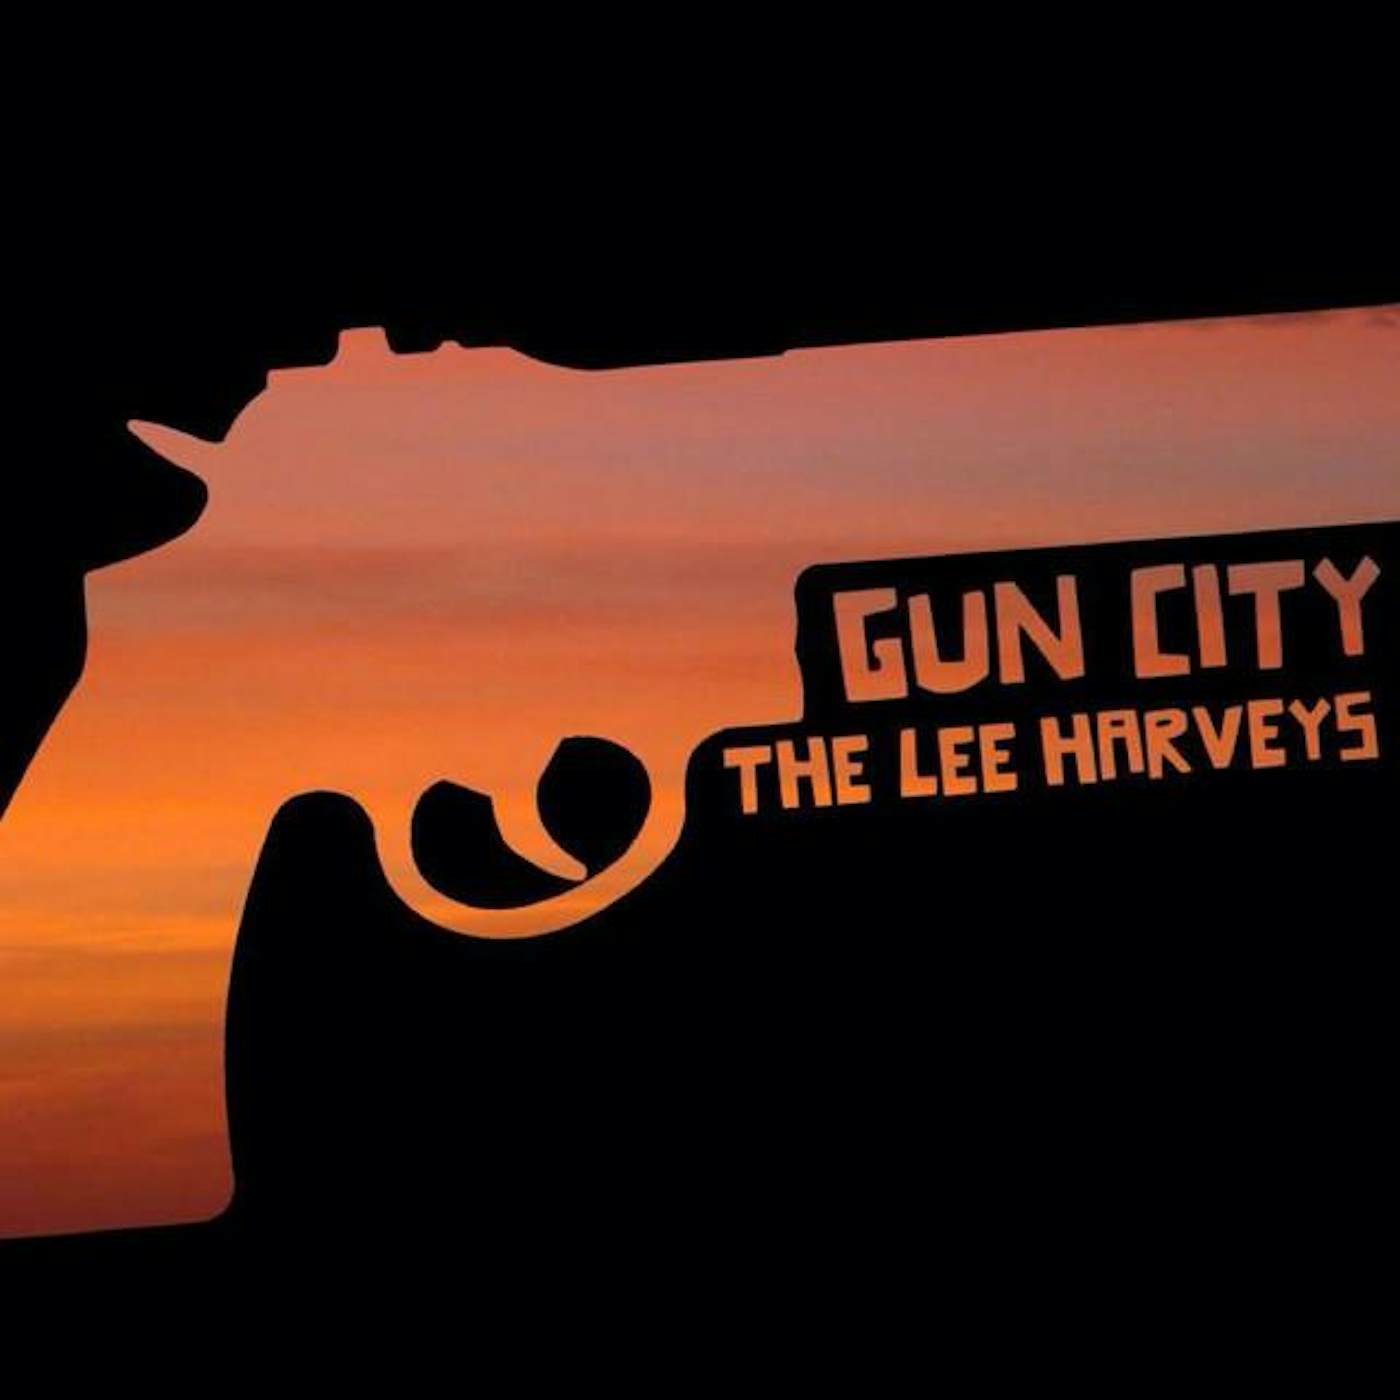 The Lee Harveys